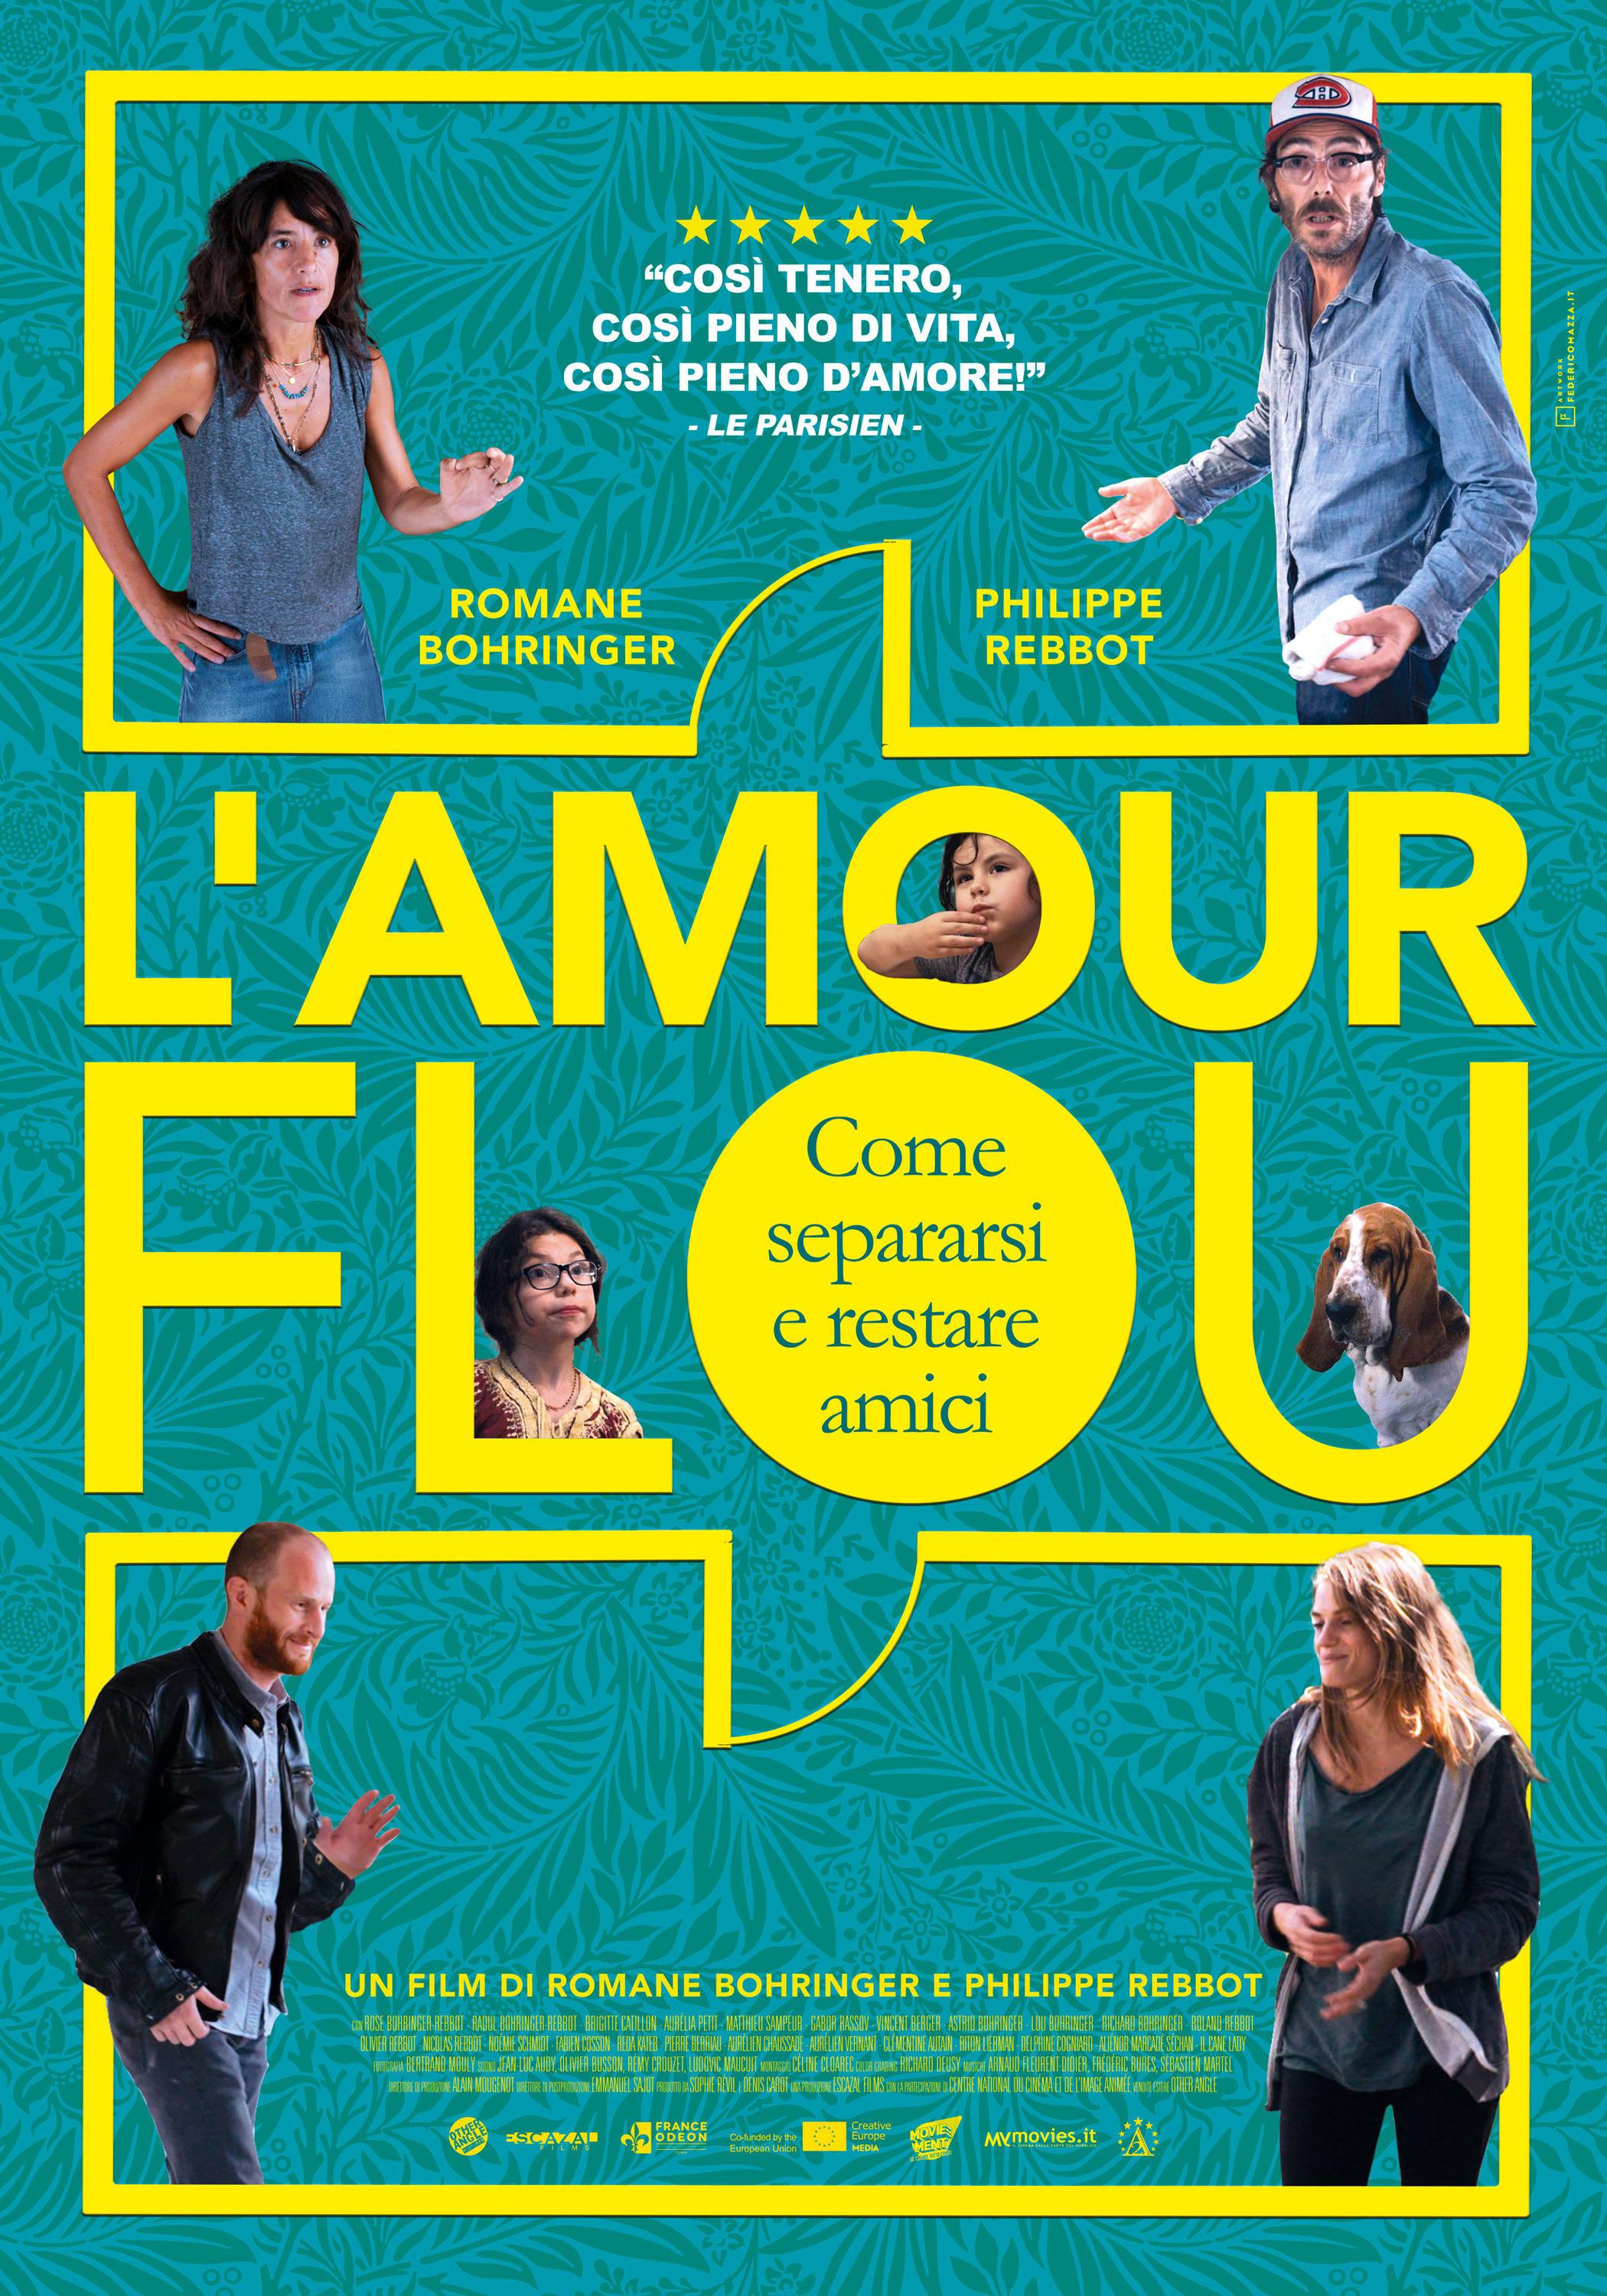 Постер фильма L'amour flou